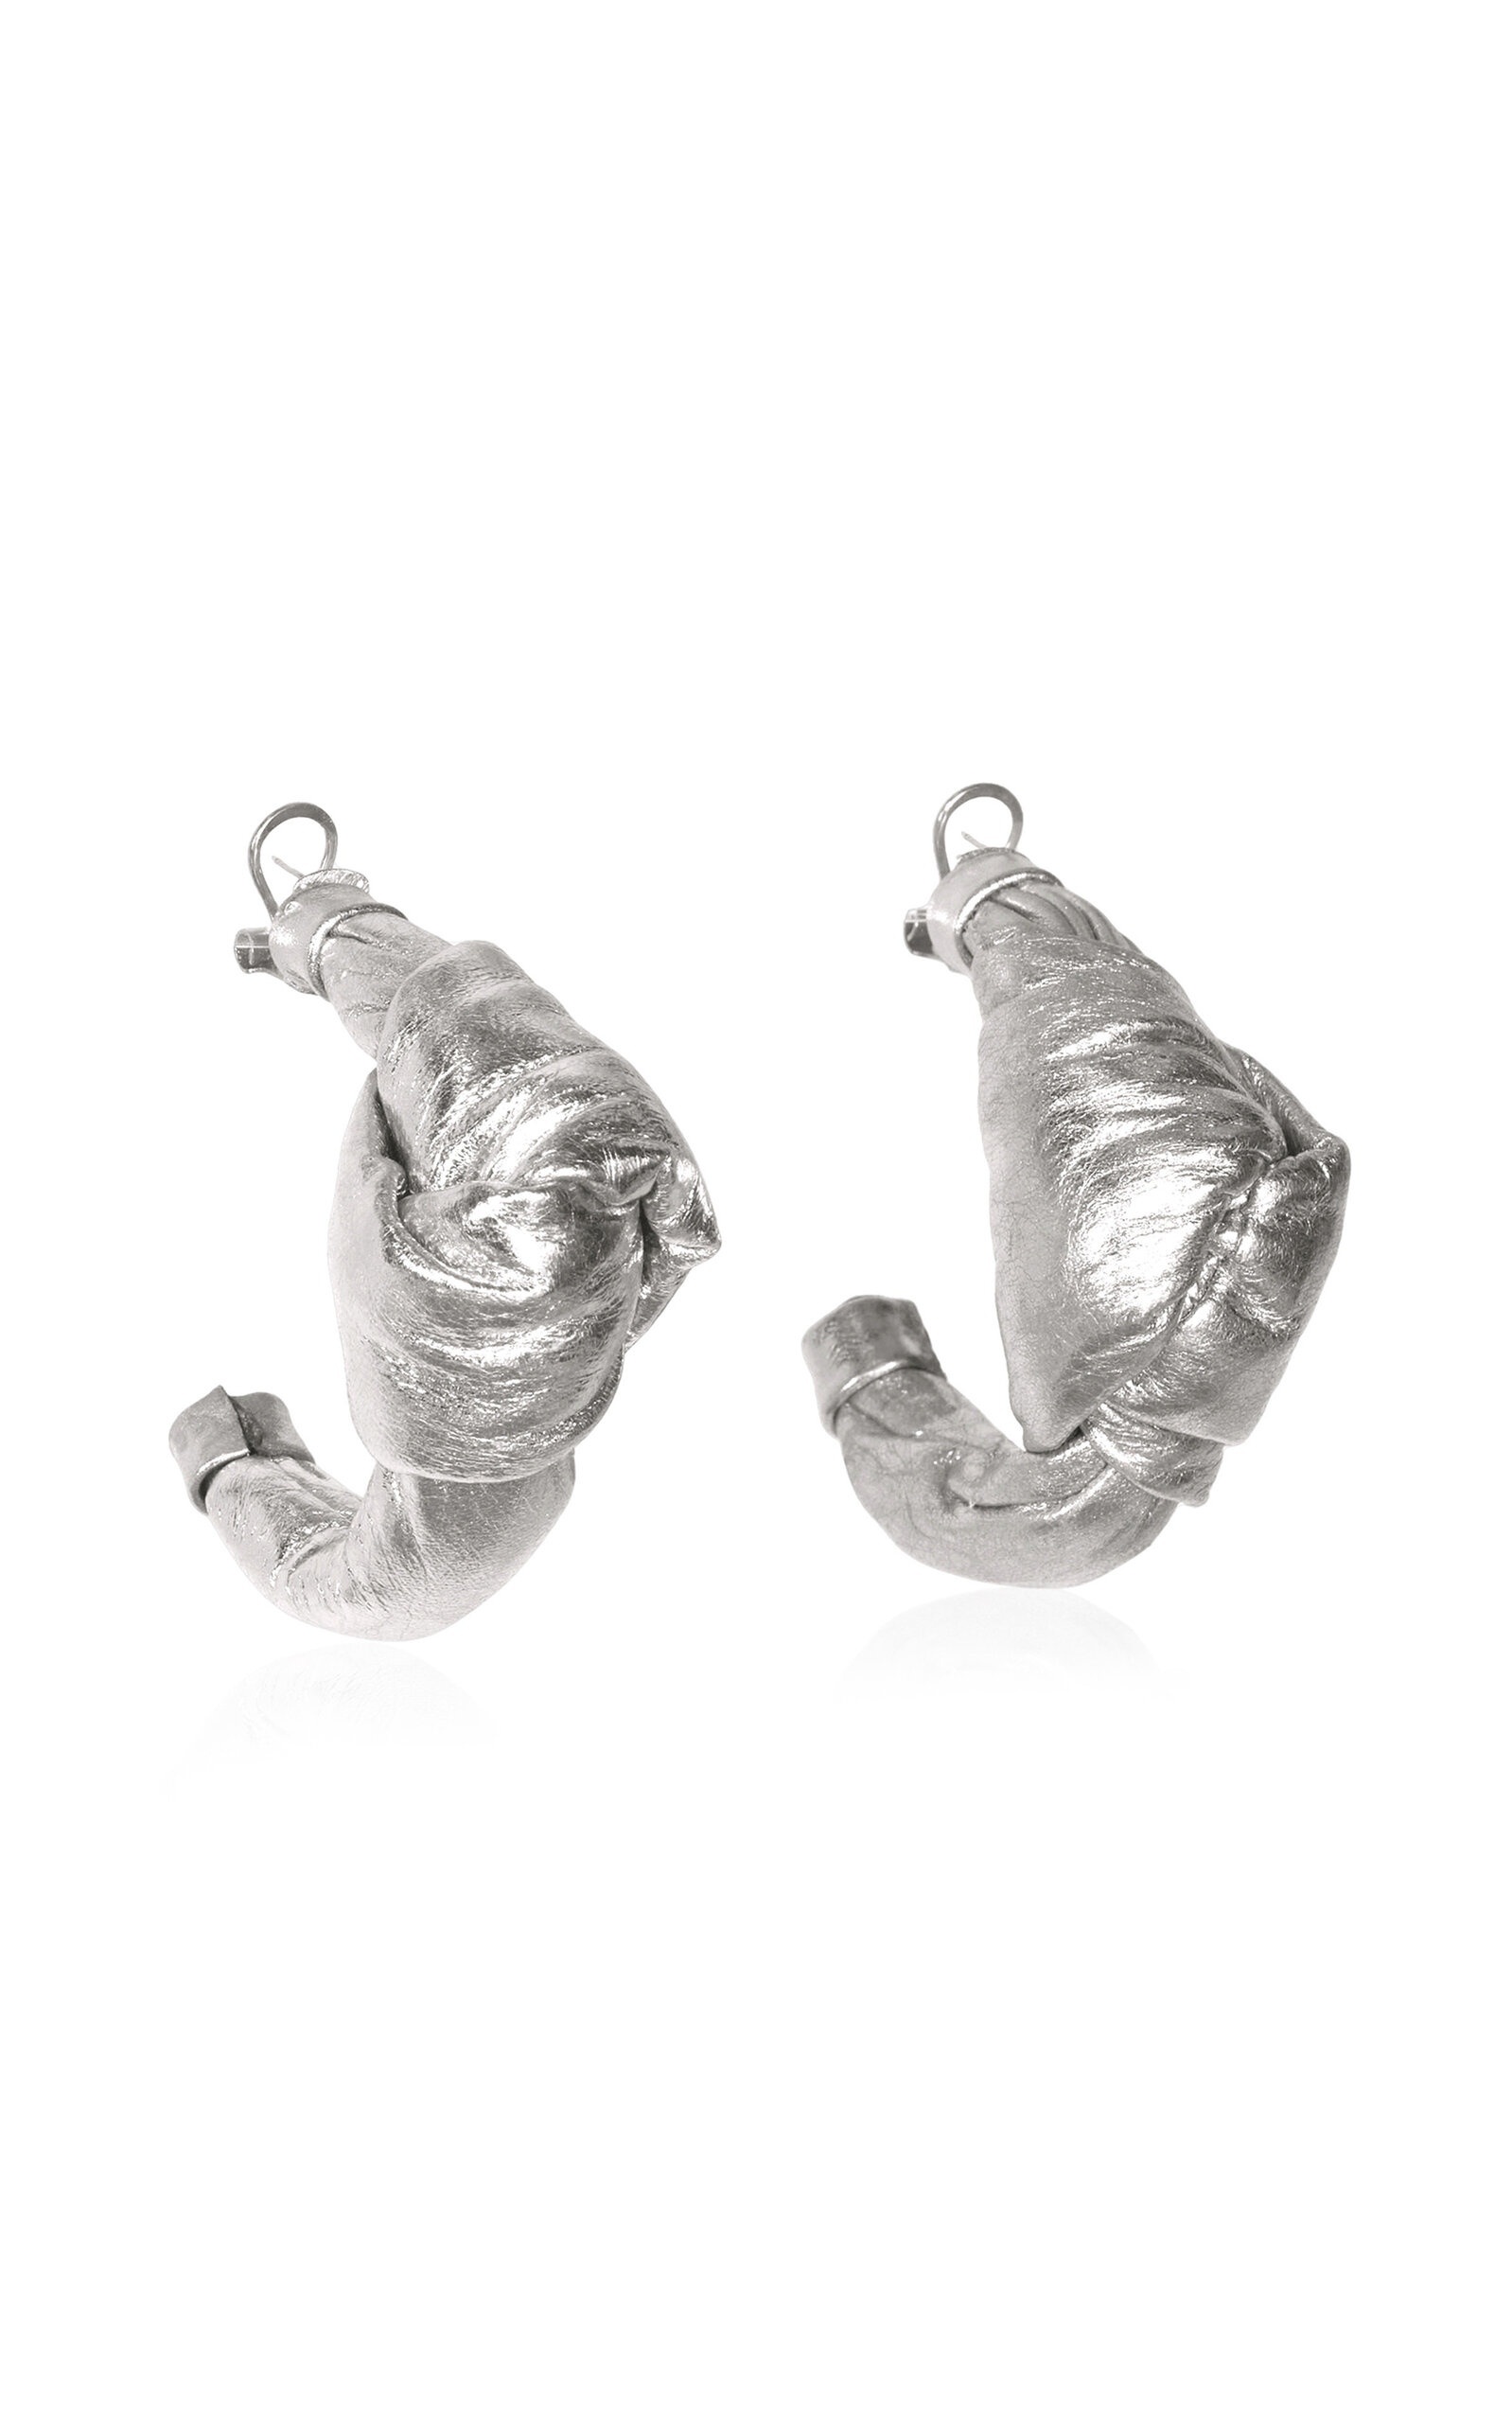 Fulgor Cósmico Leather Ear Cuff Set silver - 2